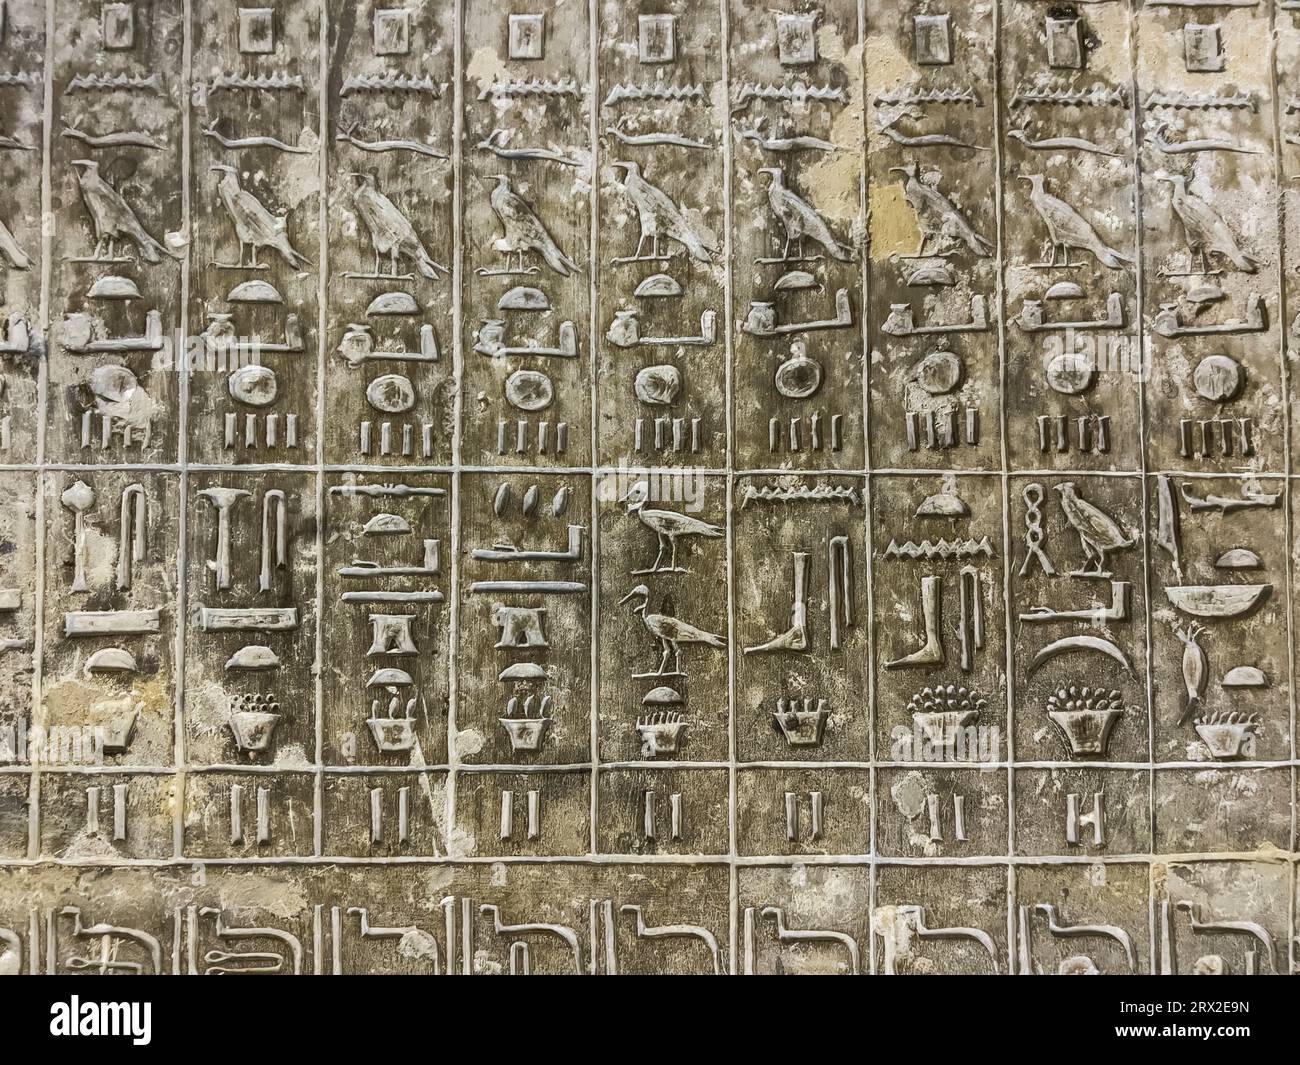 Relief d'une tombe à Saqqara, partie de la nécropole memphite, site du patrimoine mondial de l'UNESCO, Egypte, Afrique du Nord Banque D'Images